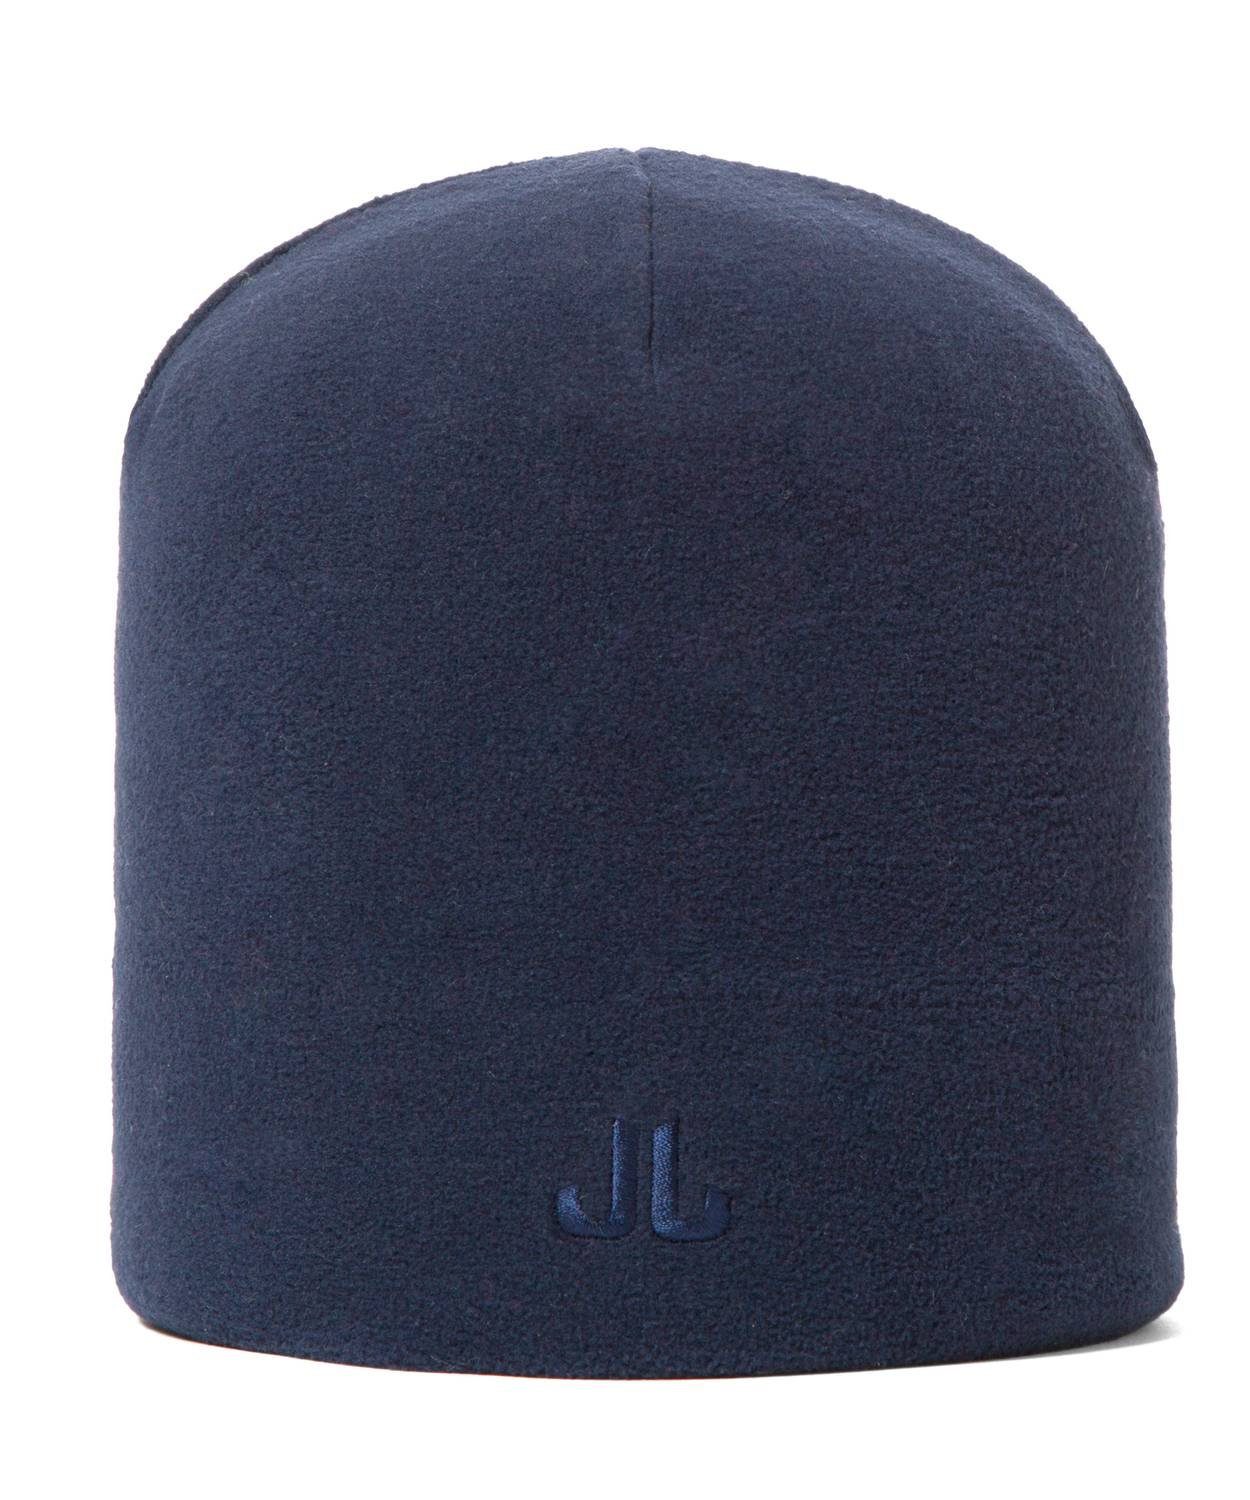 Jail Jam Strickmütze Unisex aus doppellagiger Mütze Navy Microfleece, Blue Bund